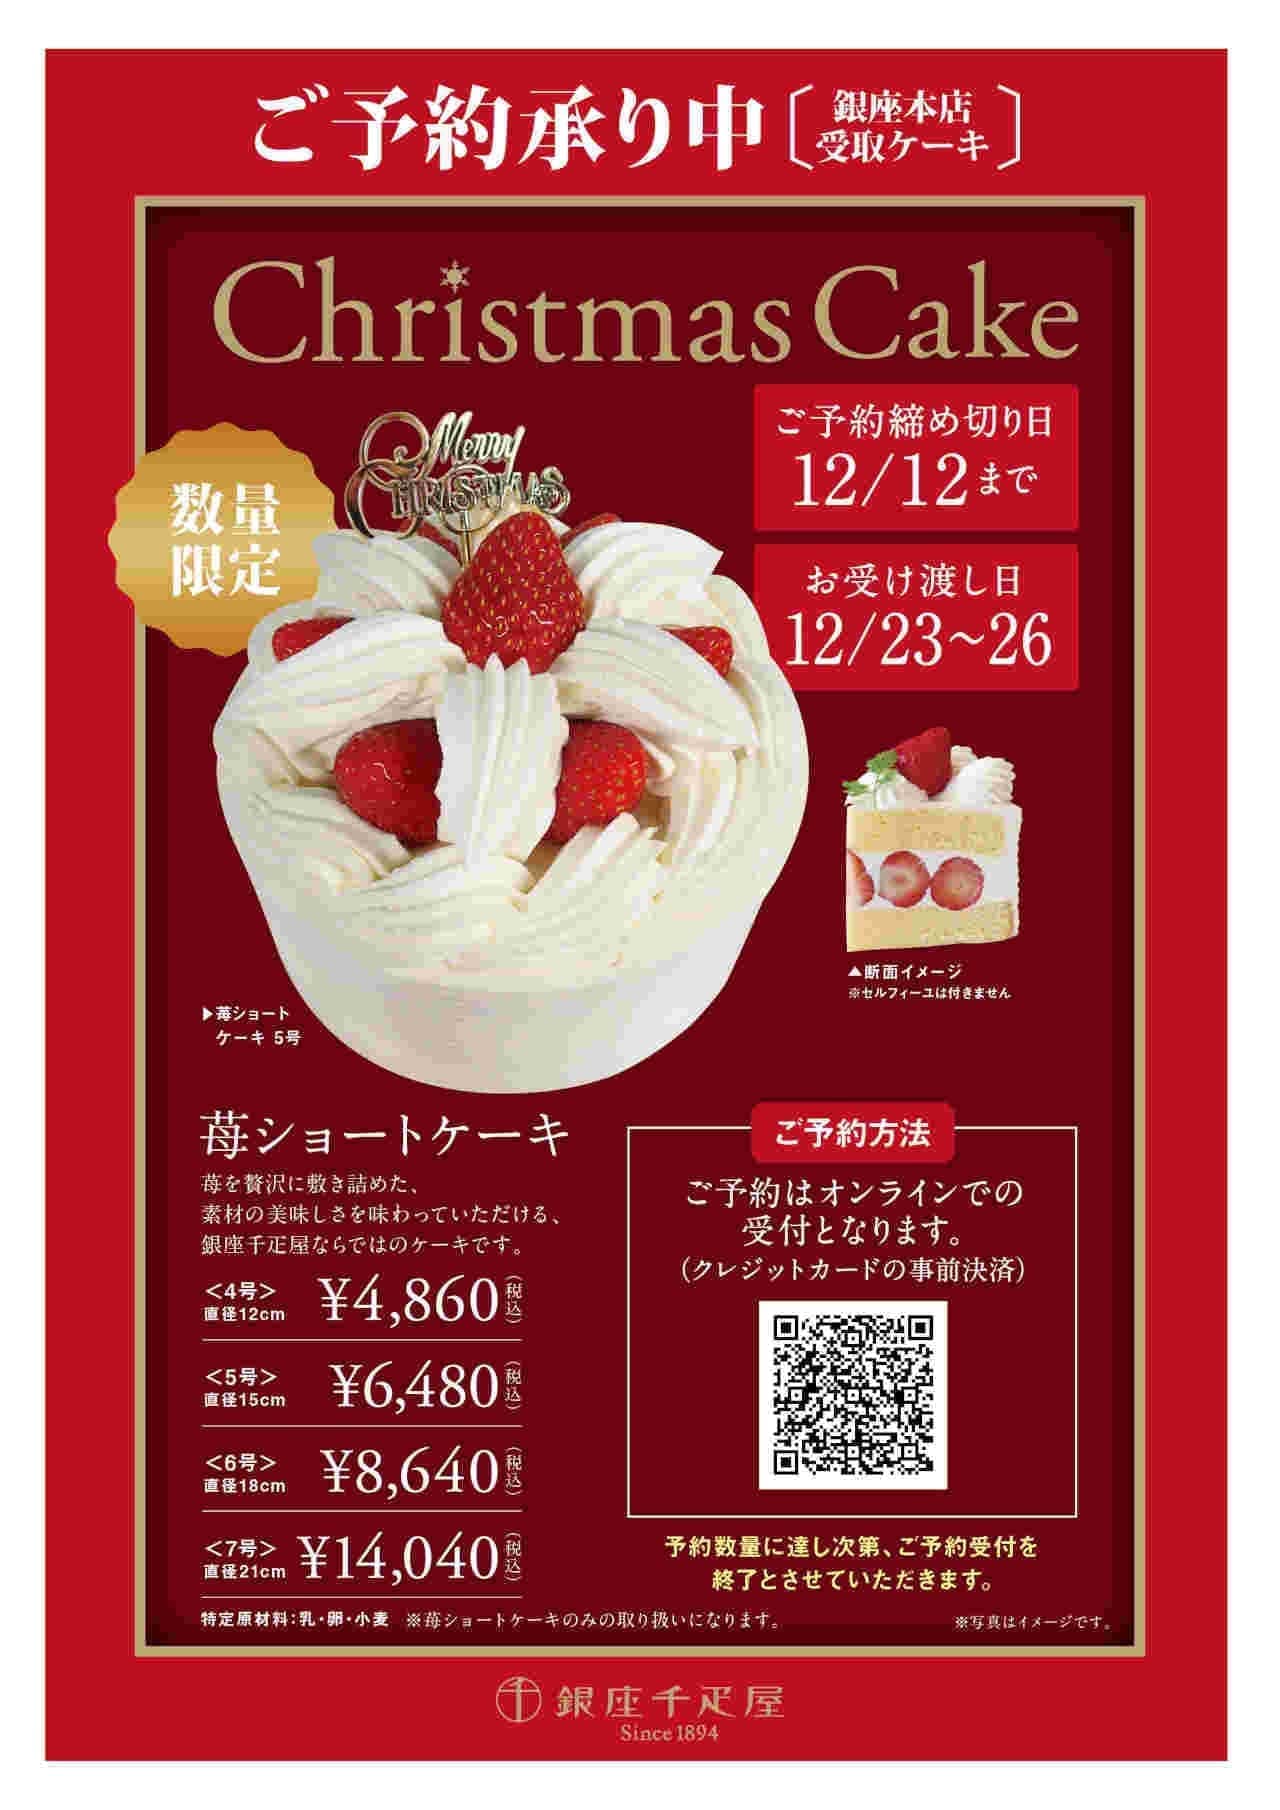 銀座千疋屋「クリスマスケーキ」